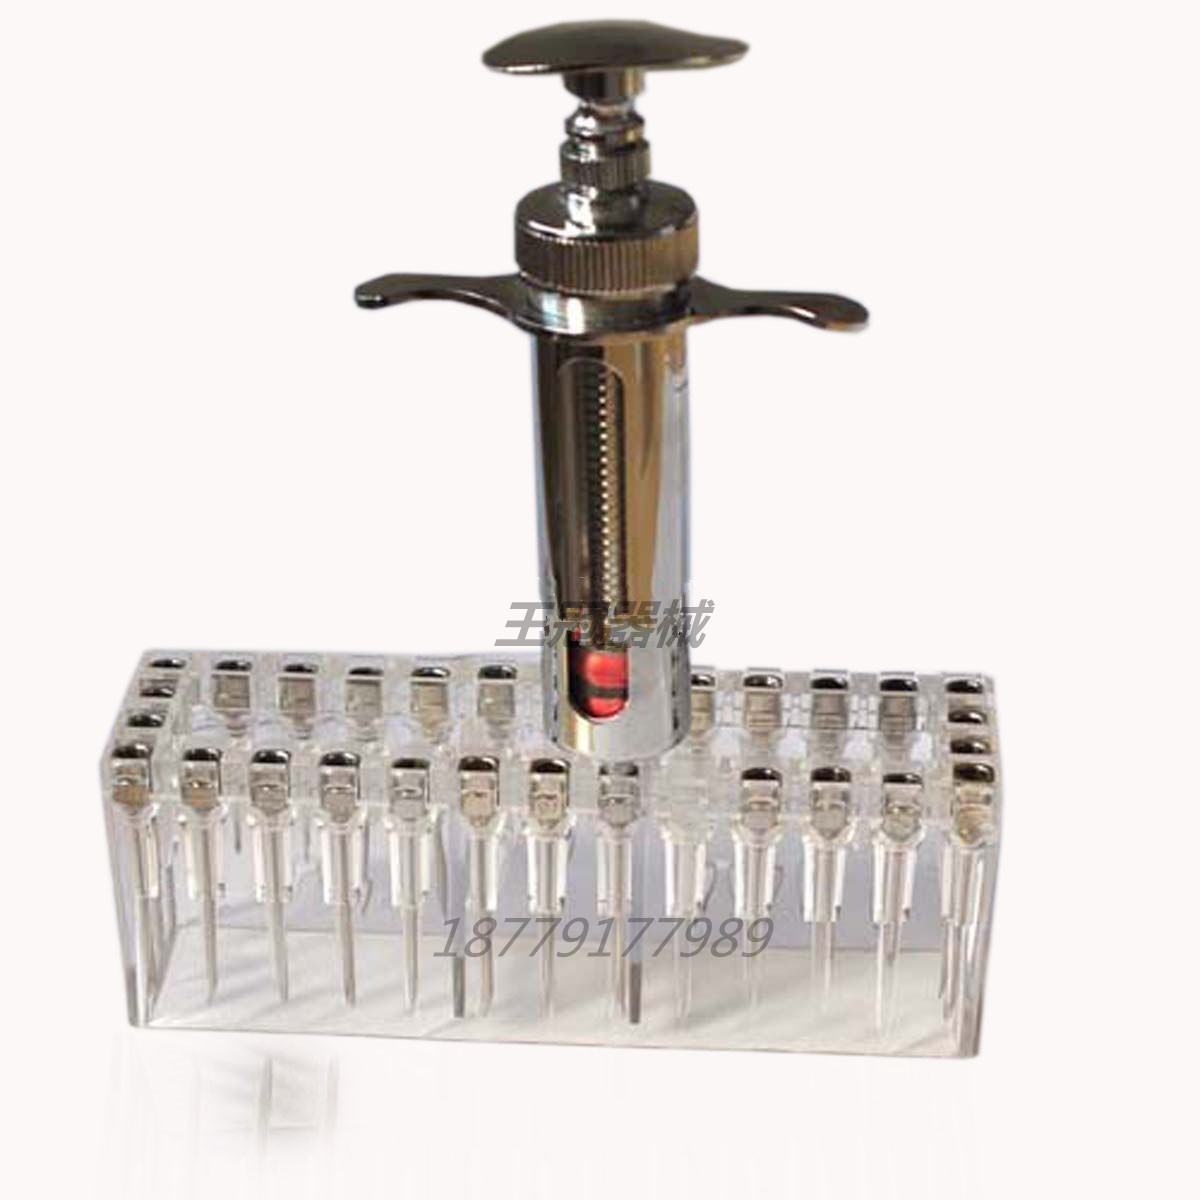 针头换针器 针头架 畜牧器械 (针头和注射器仅为演示用)